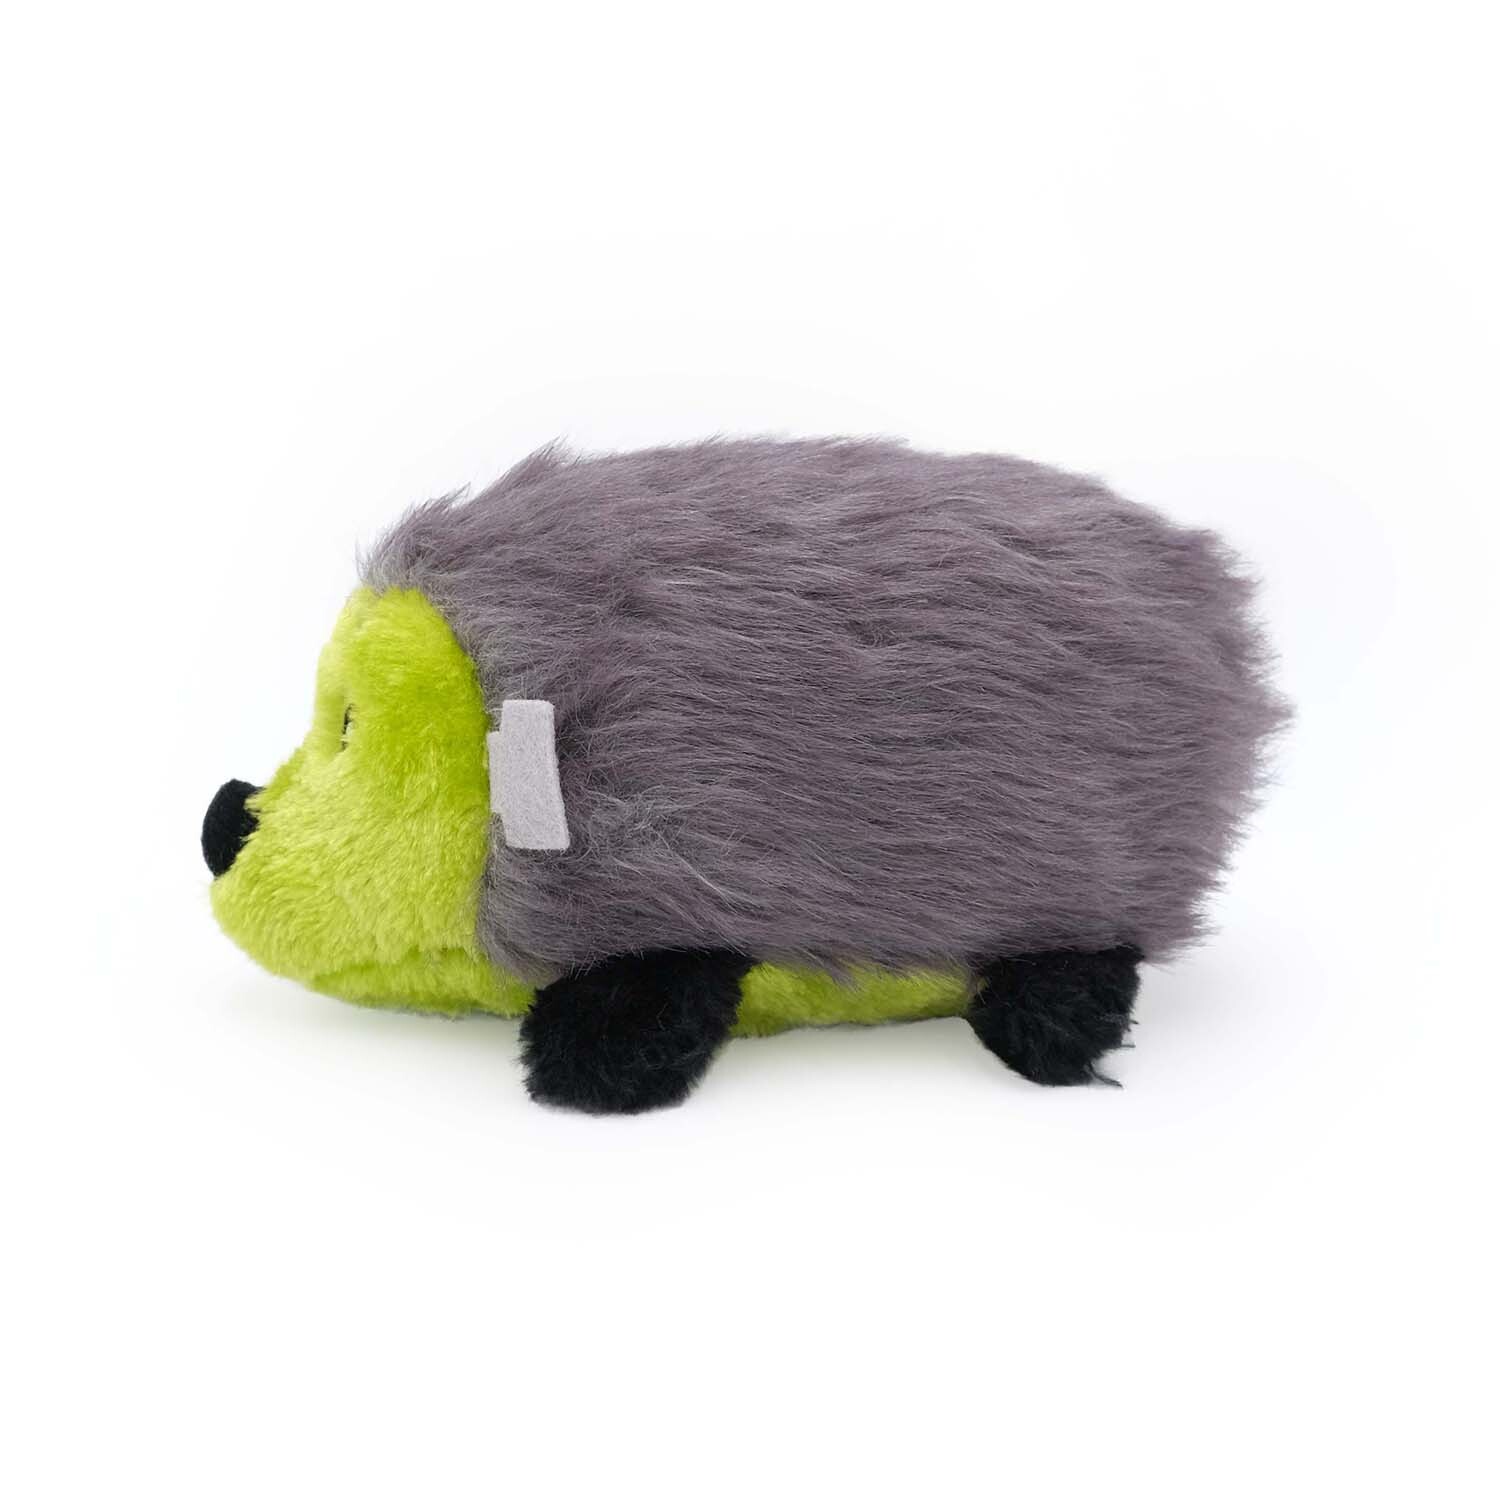 Zippy Paws Plush Squeaker Dog Toy - Halloween Frankenstein Hedgehog image 0